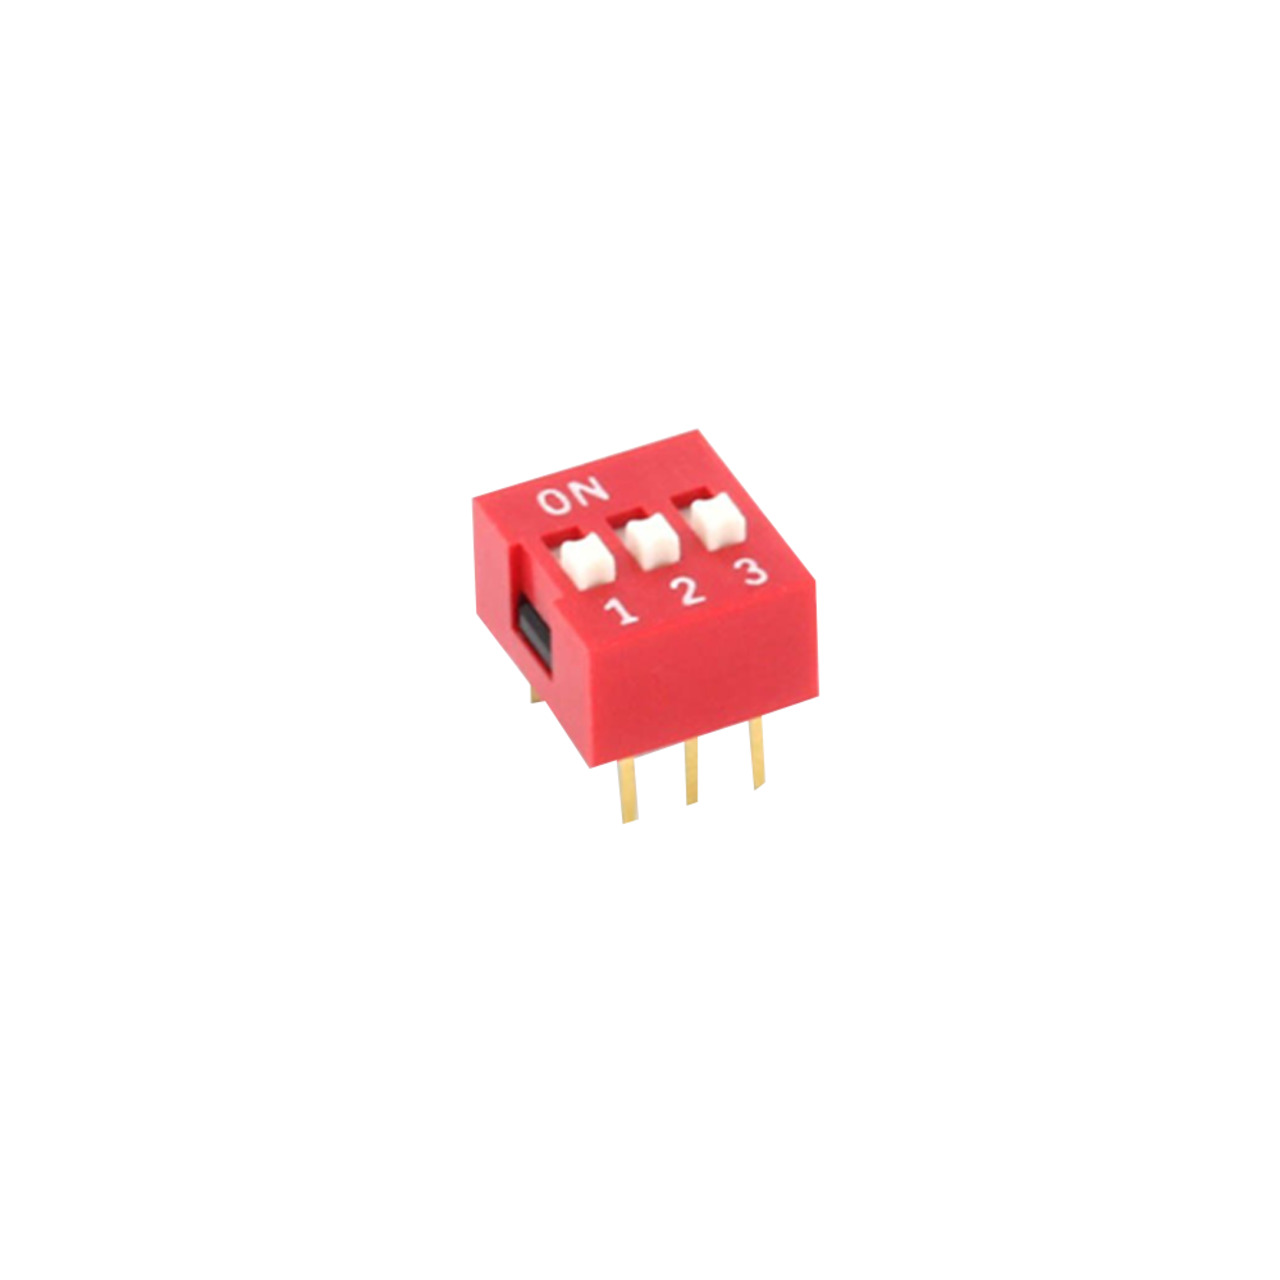 DIP-Schalter RM2-54 3-pol unter Komponenten